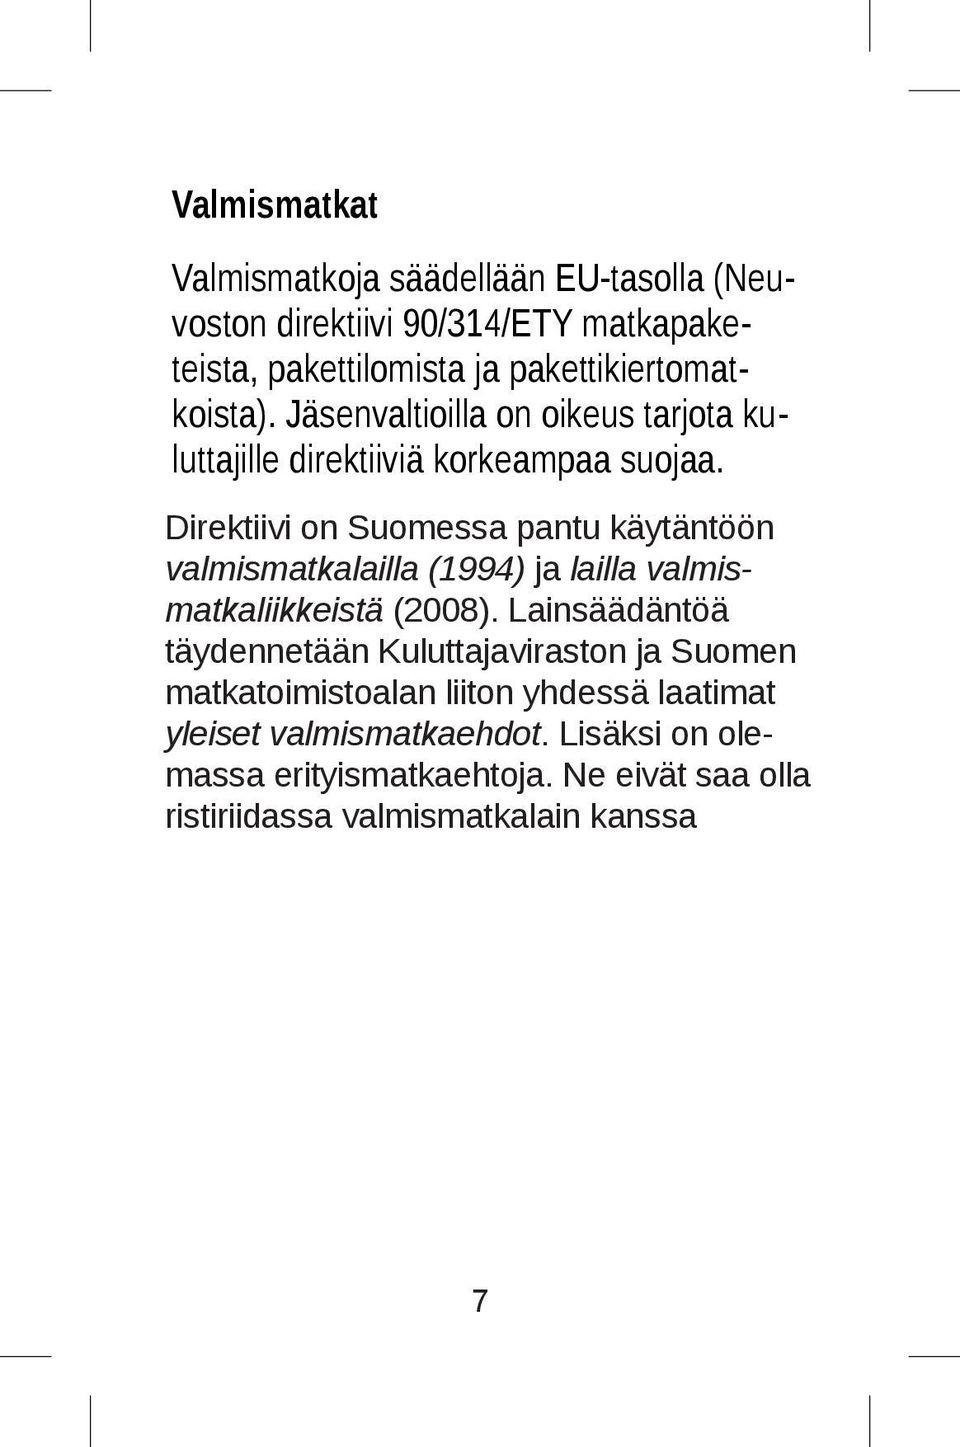 Direktiivi on Suomessa pantu täytäntöön käytäntöön valmismatkalailla valma (1994) ja lailla valmismatkaliikkeistä (2008).